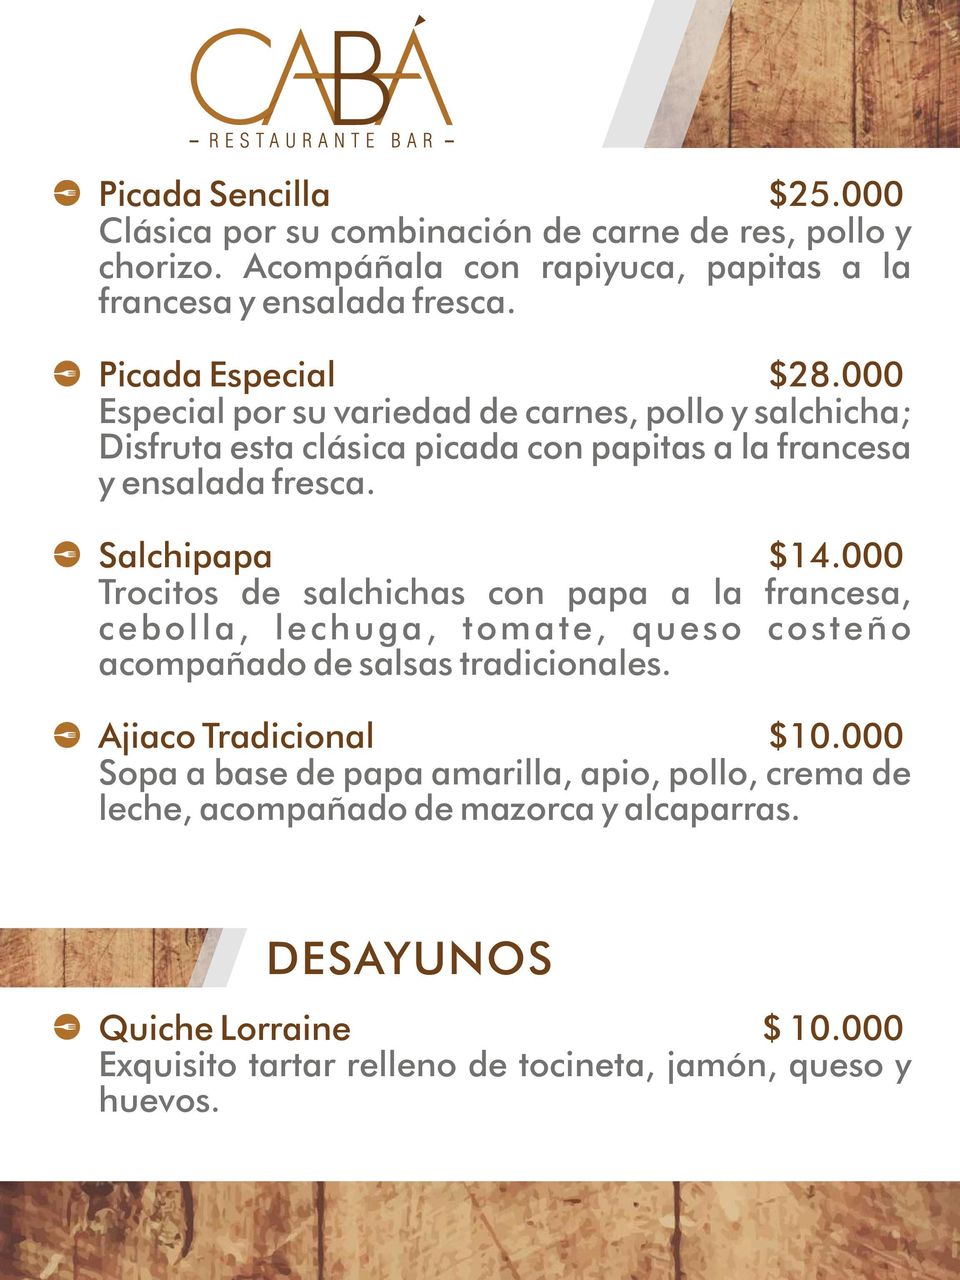 Salchipapa $14.000 Trocitos de salchichas con papa a la francesa, cebolla, lechuga, tomate, queso costeño acompañado de salsas tradicionales. Ajiaco Tradicional $10.